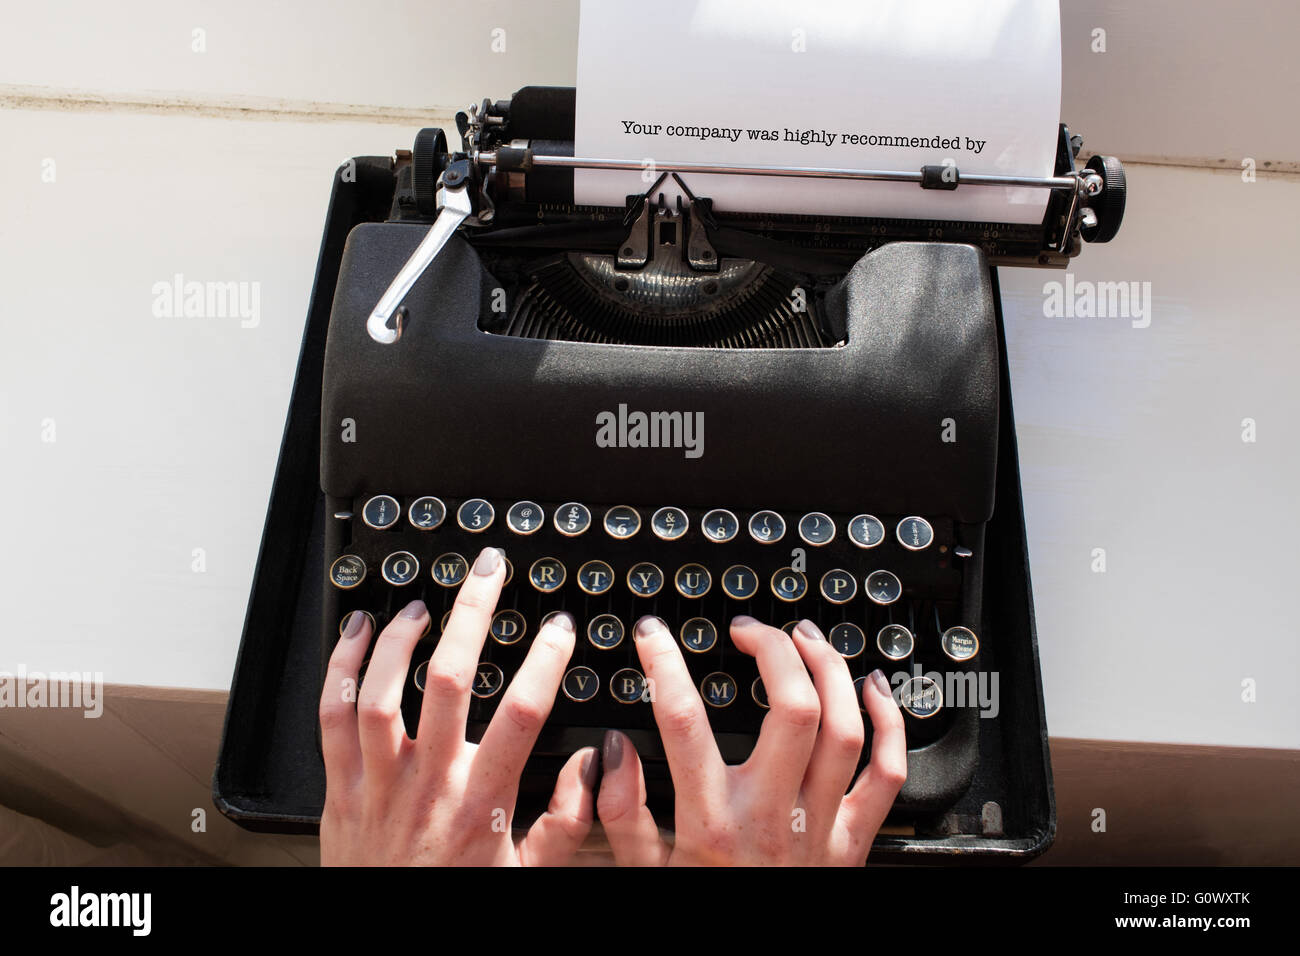 La vostra azienda è stata altamente raccomandato da contro mano womans digitando su una macchina da scrivere Foto Stock